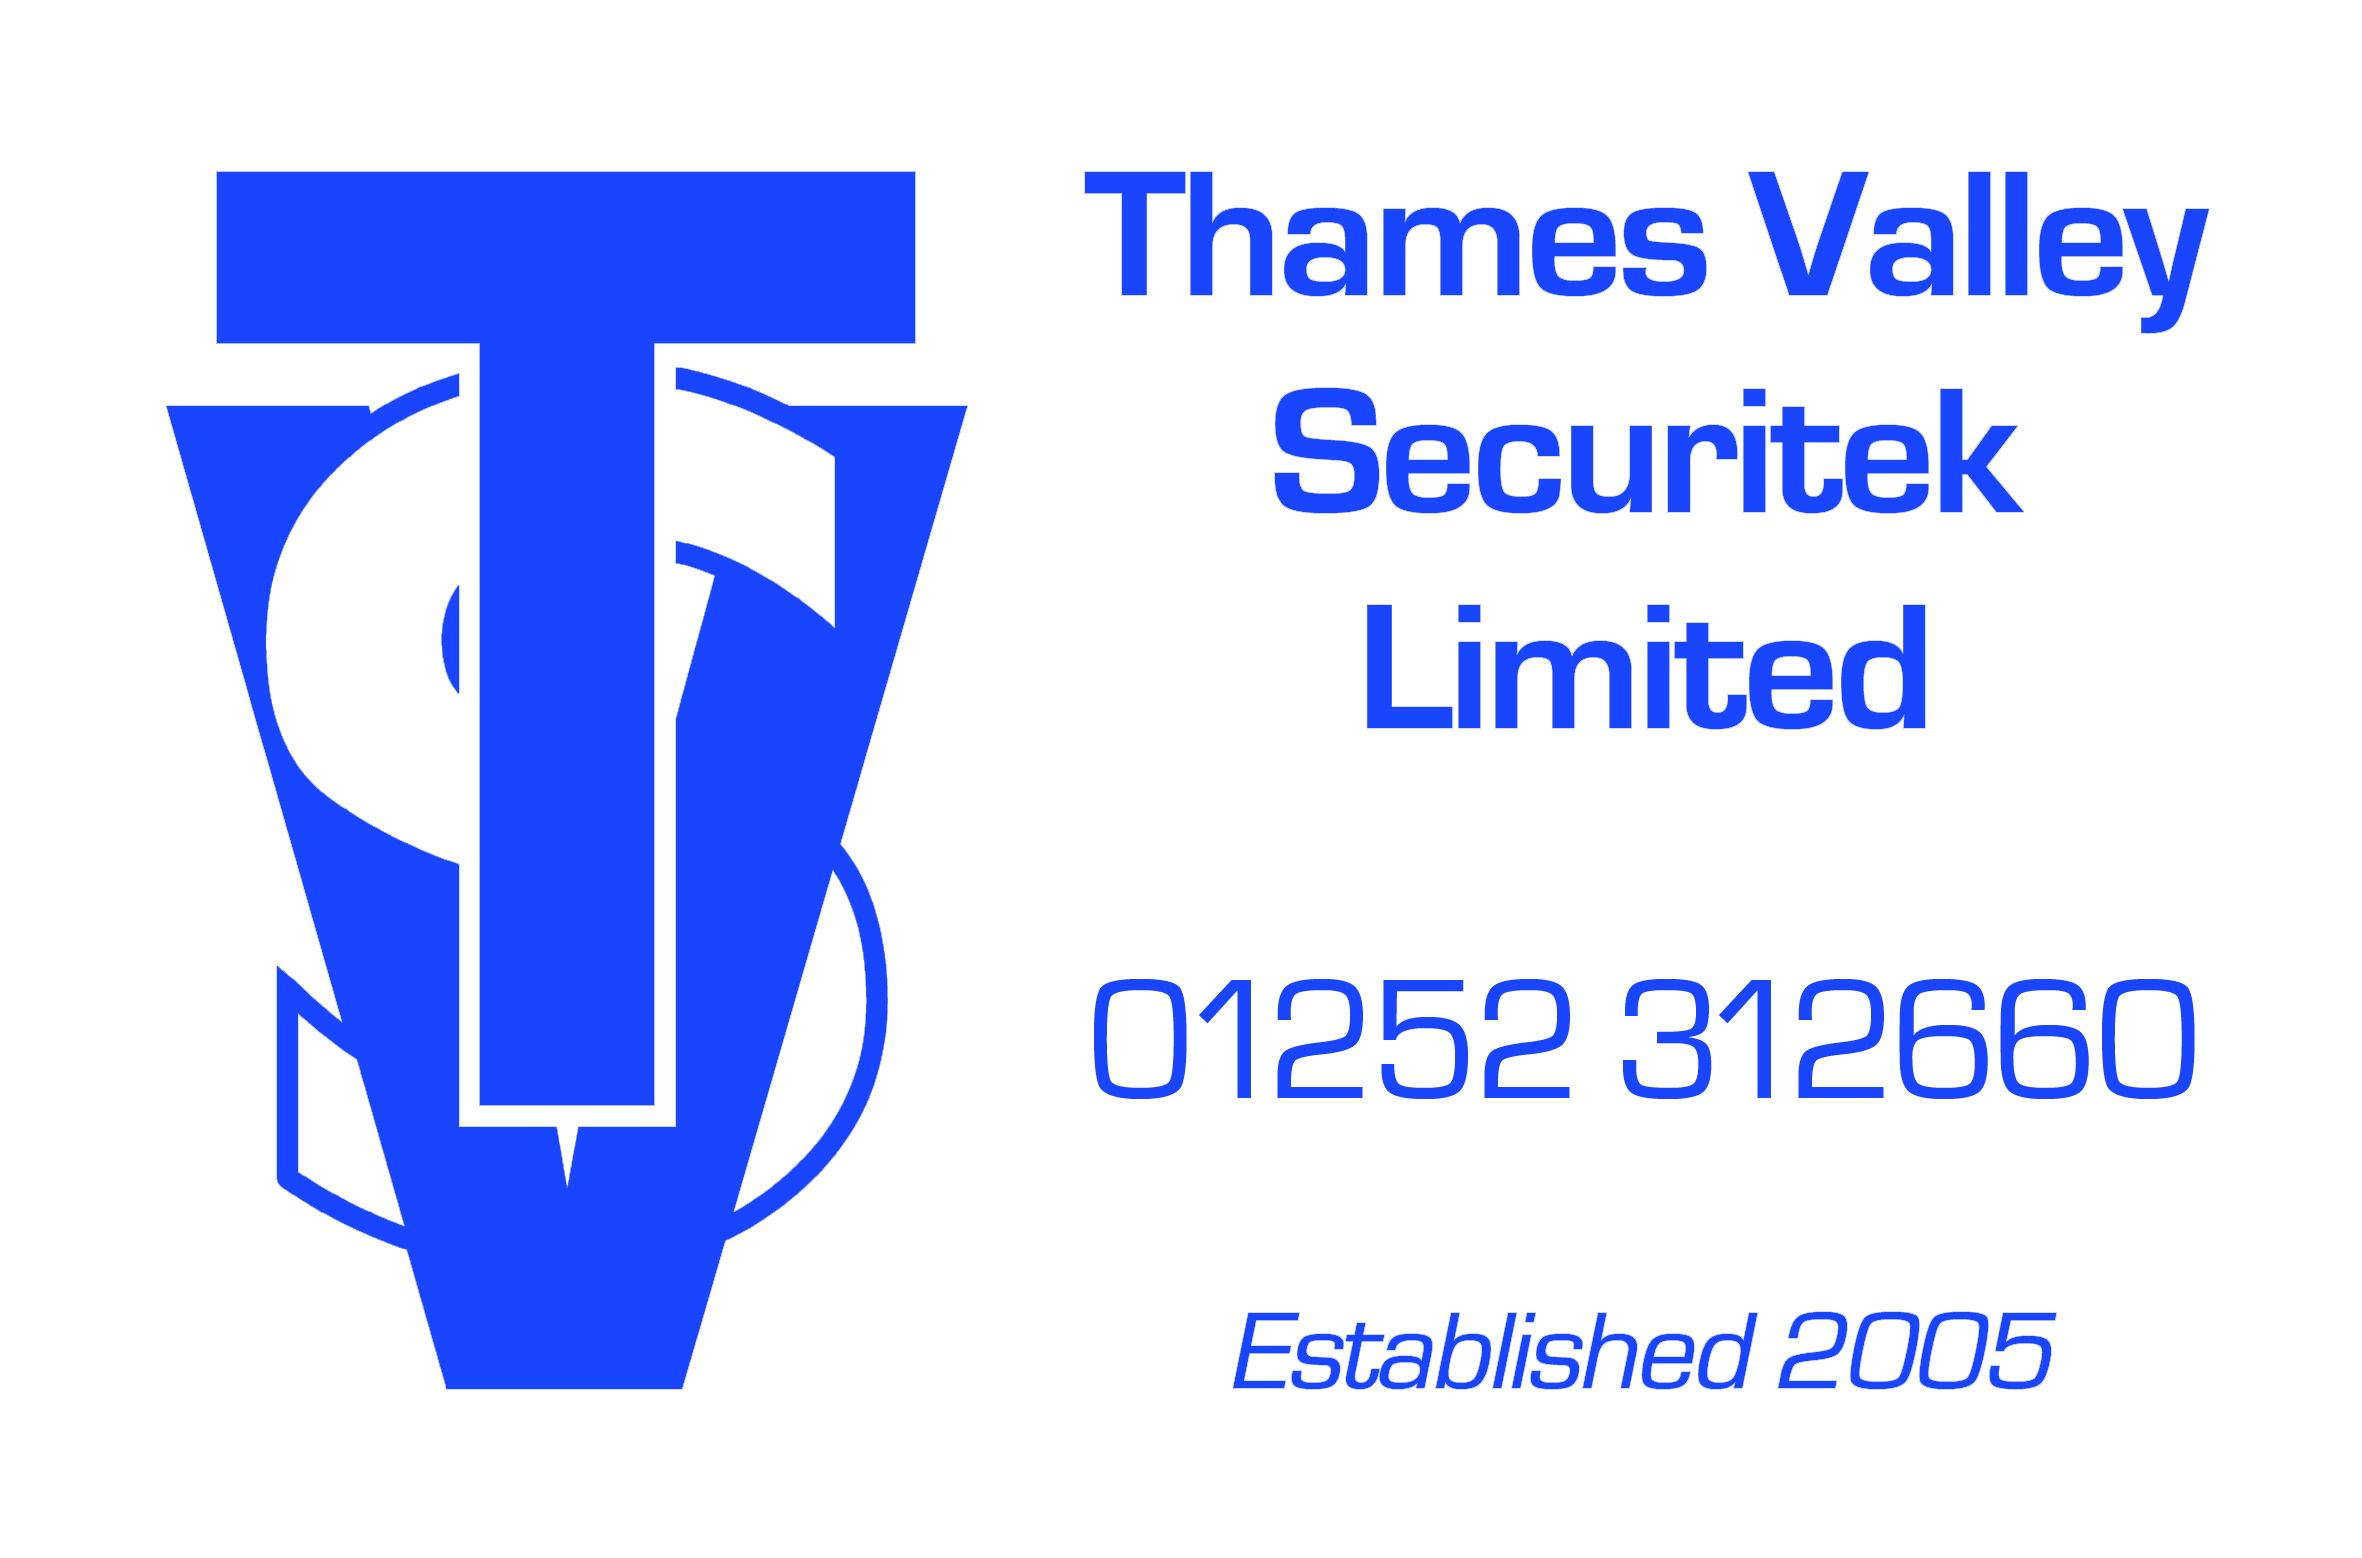 Thames Valley Securitek Limited